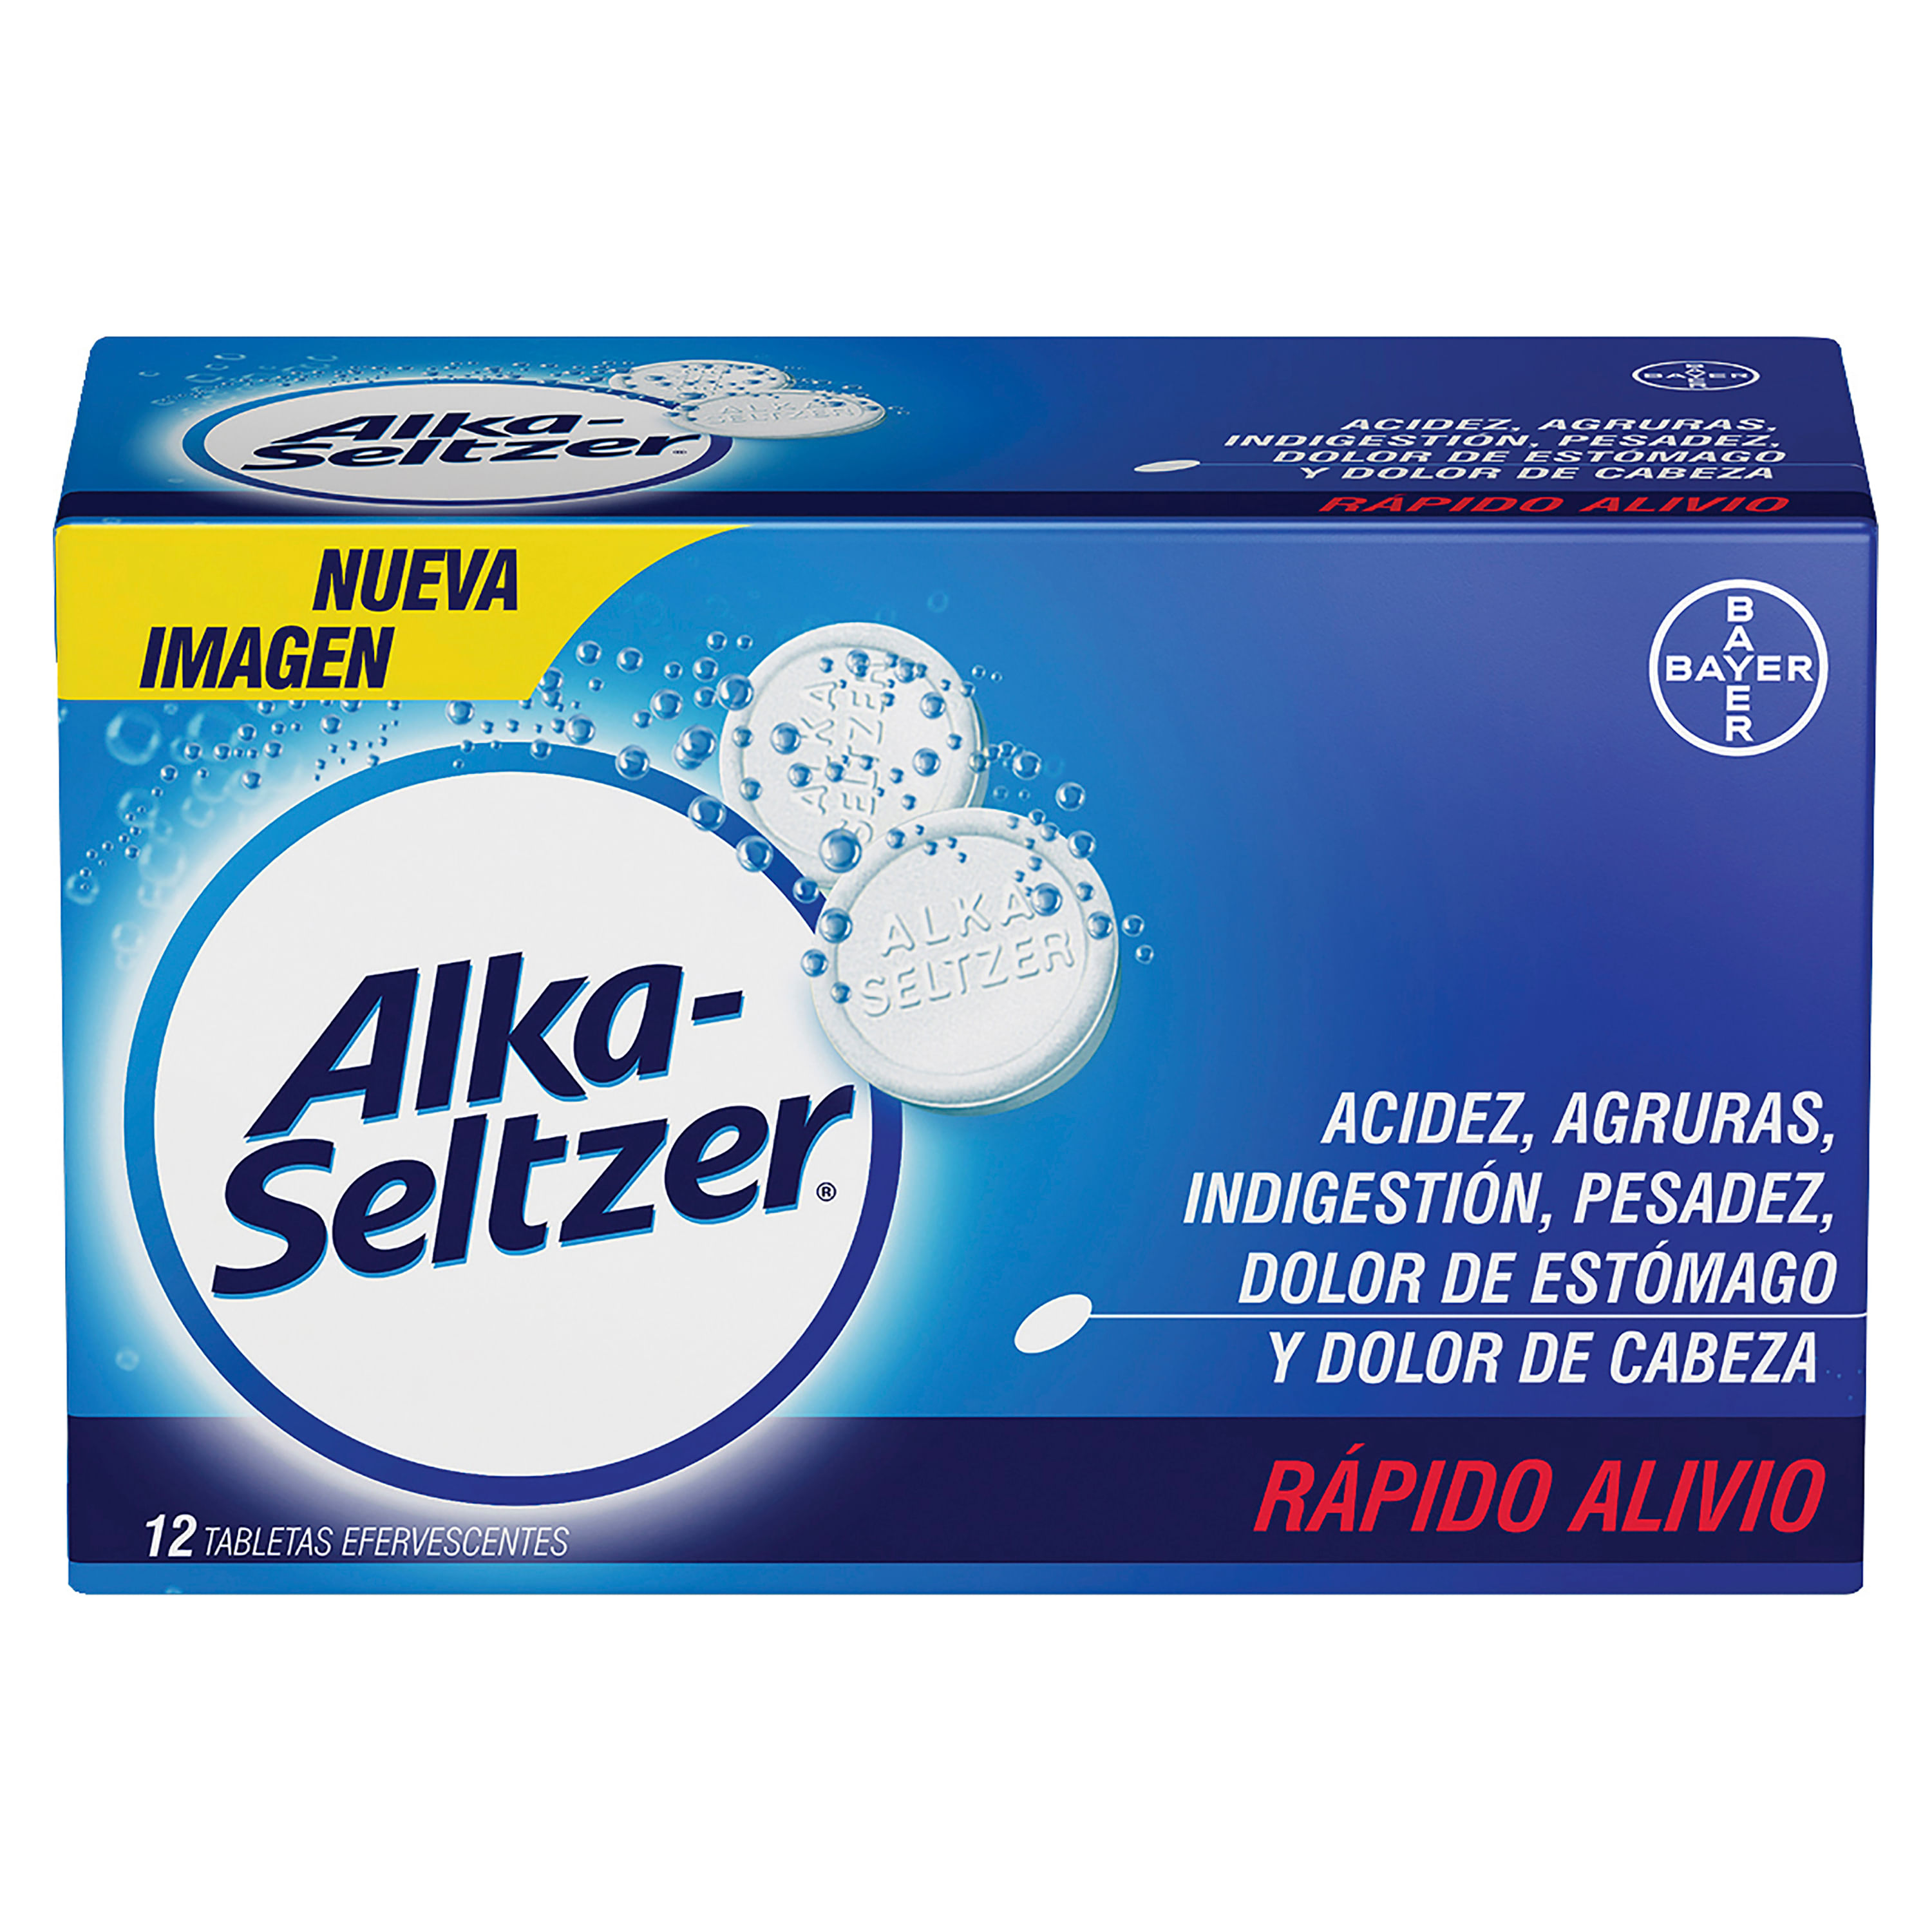 Alka-Seltzer-Efervescentes-Caja-X-12-Tabletas-1-27261